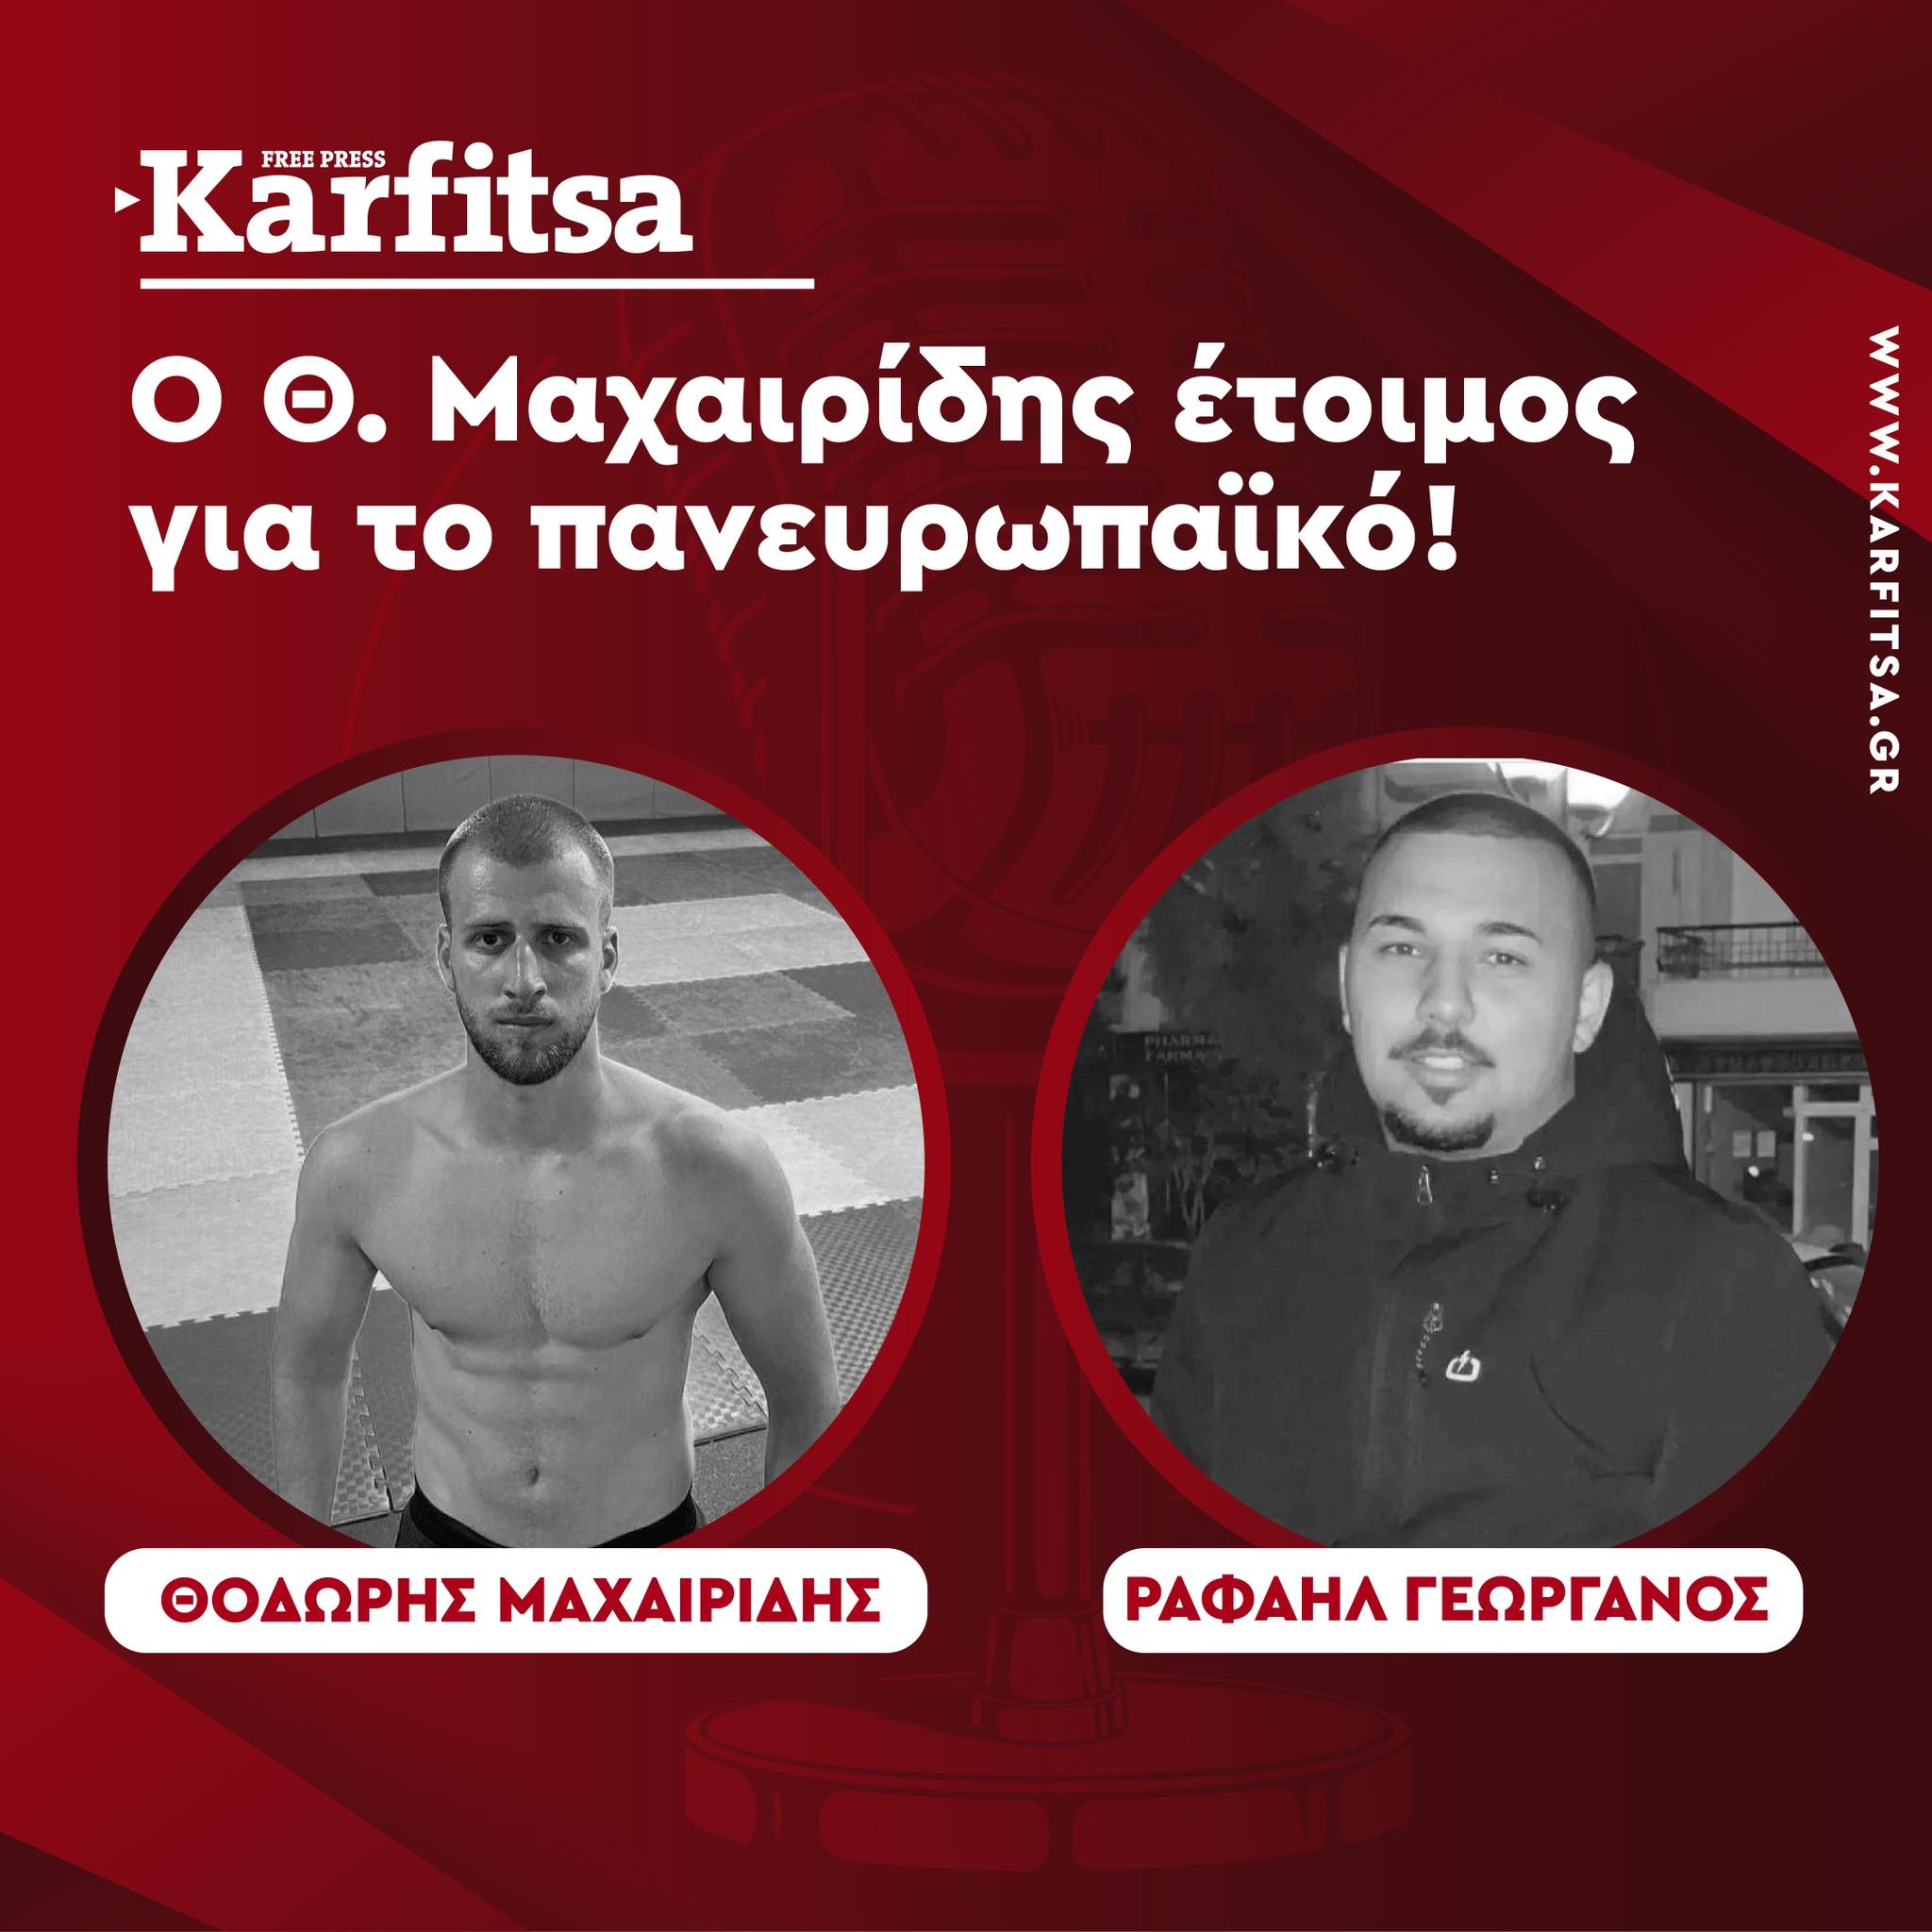 Ο Θεσσαλονικιός αθλητής του TAE KWON DO Θ. Μαχαιρίδης (Podcast)